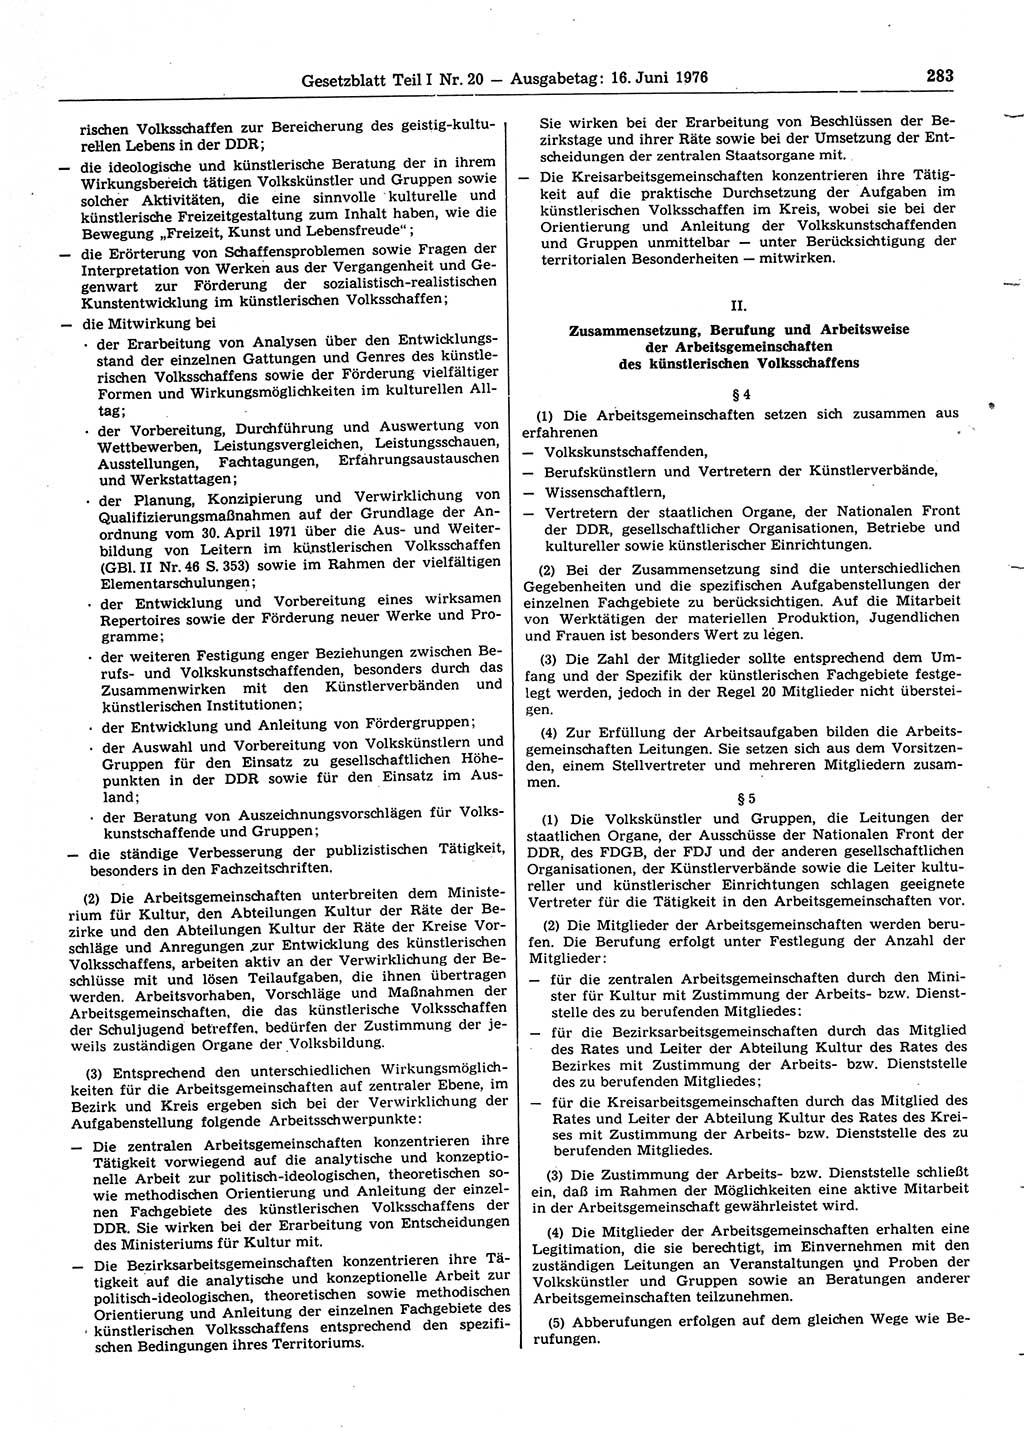 Gesetzblatt (GBl.) der Deutschen Demokratischen Republik (DDR) Teil Ⅰ 1976, Seite 283 (GBl. DDR Ⅰ 1976, S. 283)